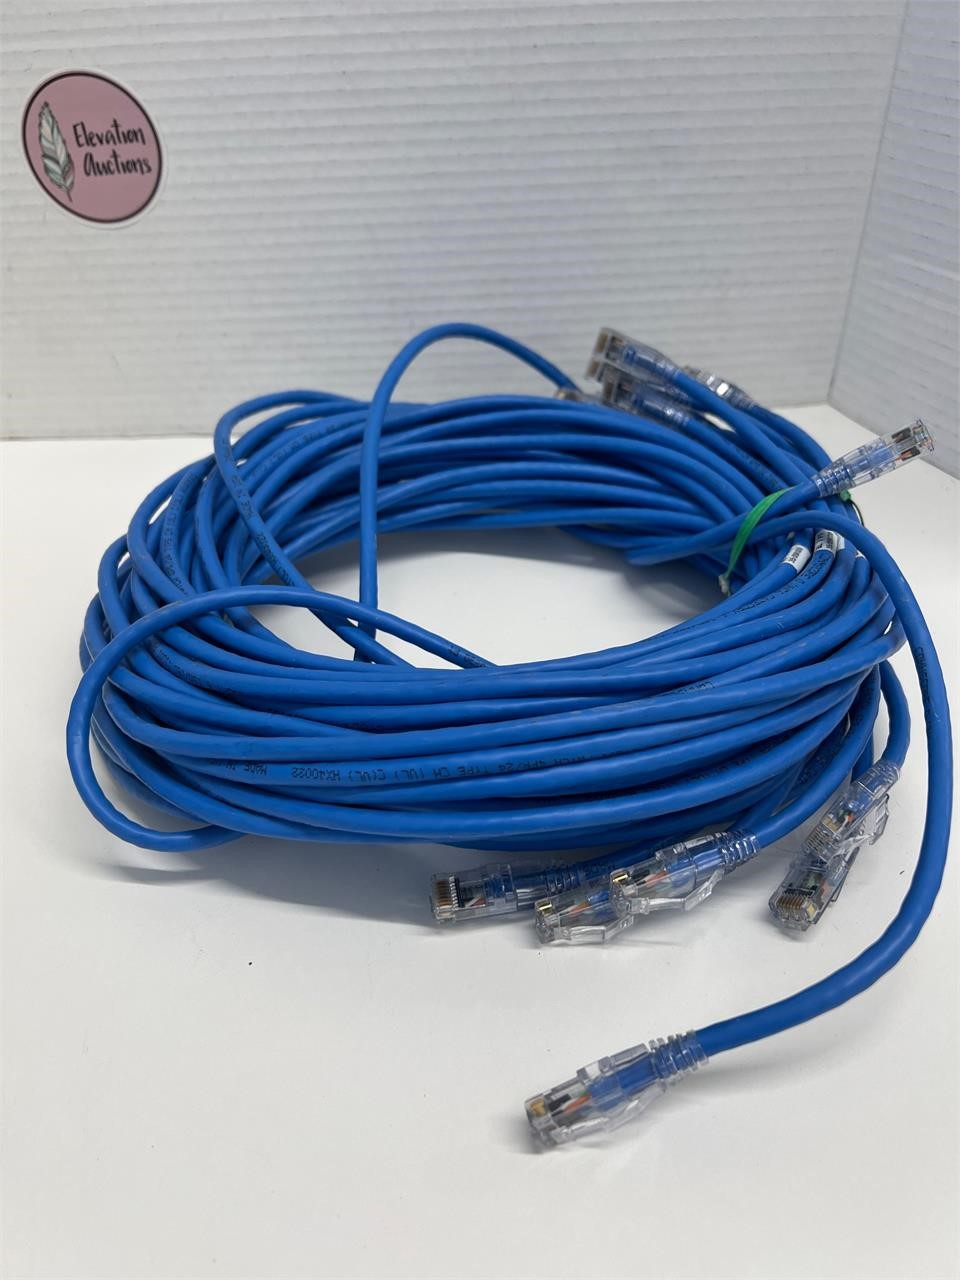 Ten 7 foot Commscope D UNC 6 Cat 6 Cables Untested